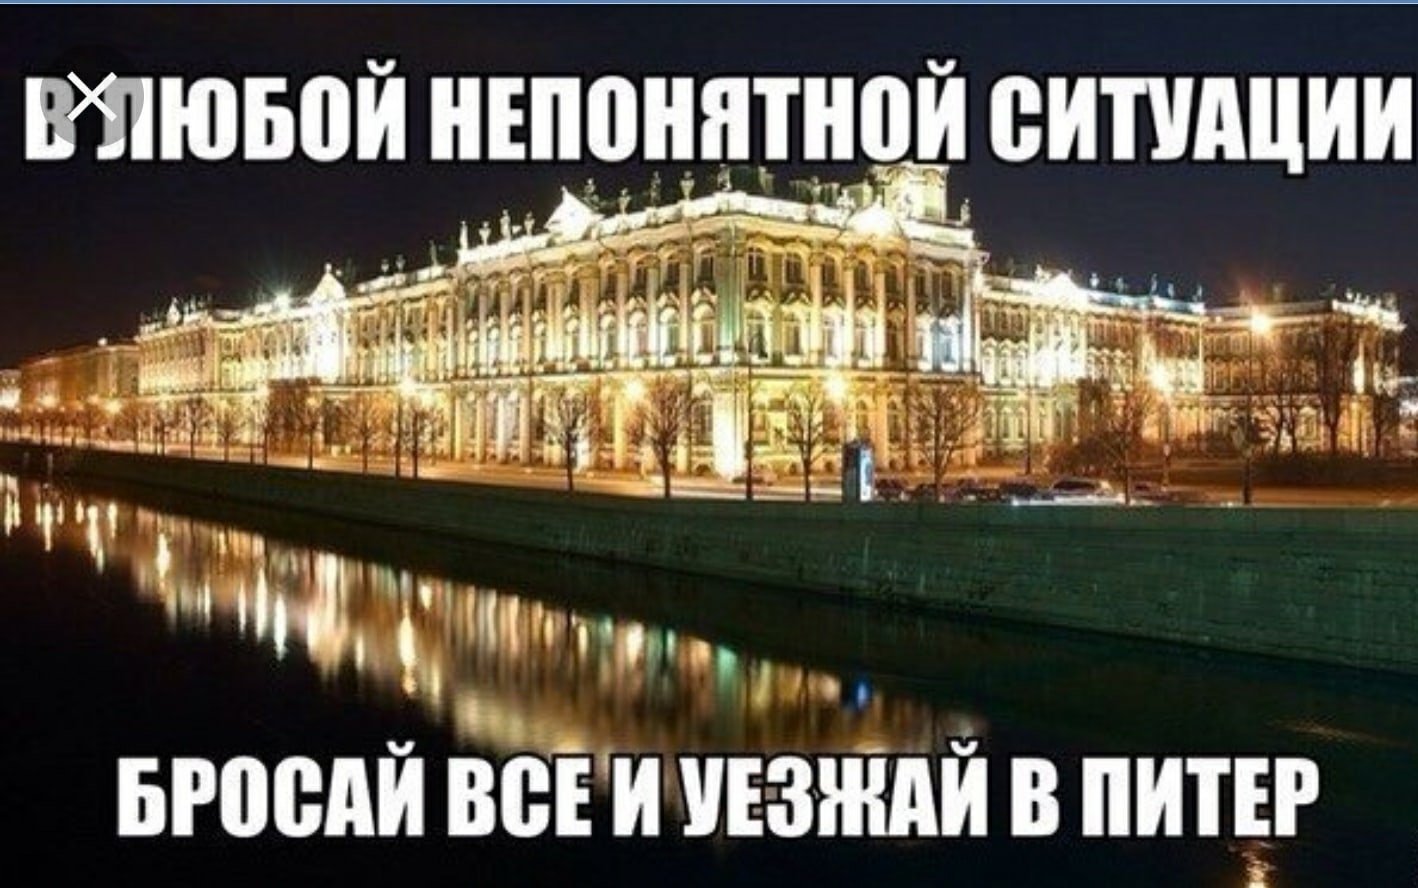 В чаще спб. Эрмитаж 1764. Эрмитаж в 1764 году. Зимний дворец Санкт-Петербург Екатерины. Хорошего отдыха в Питере.